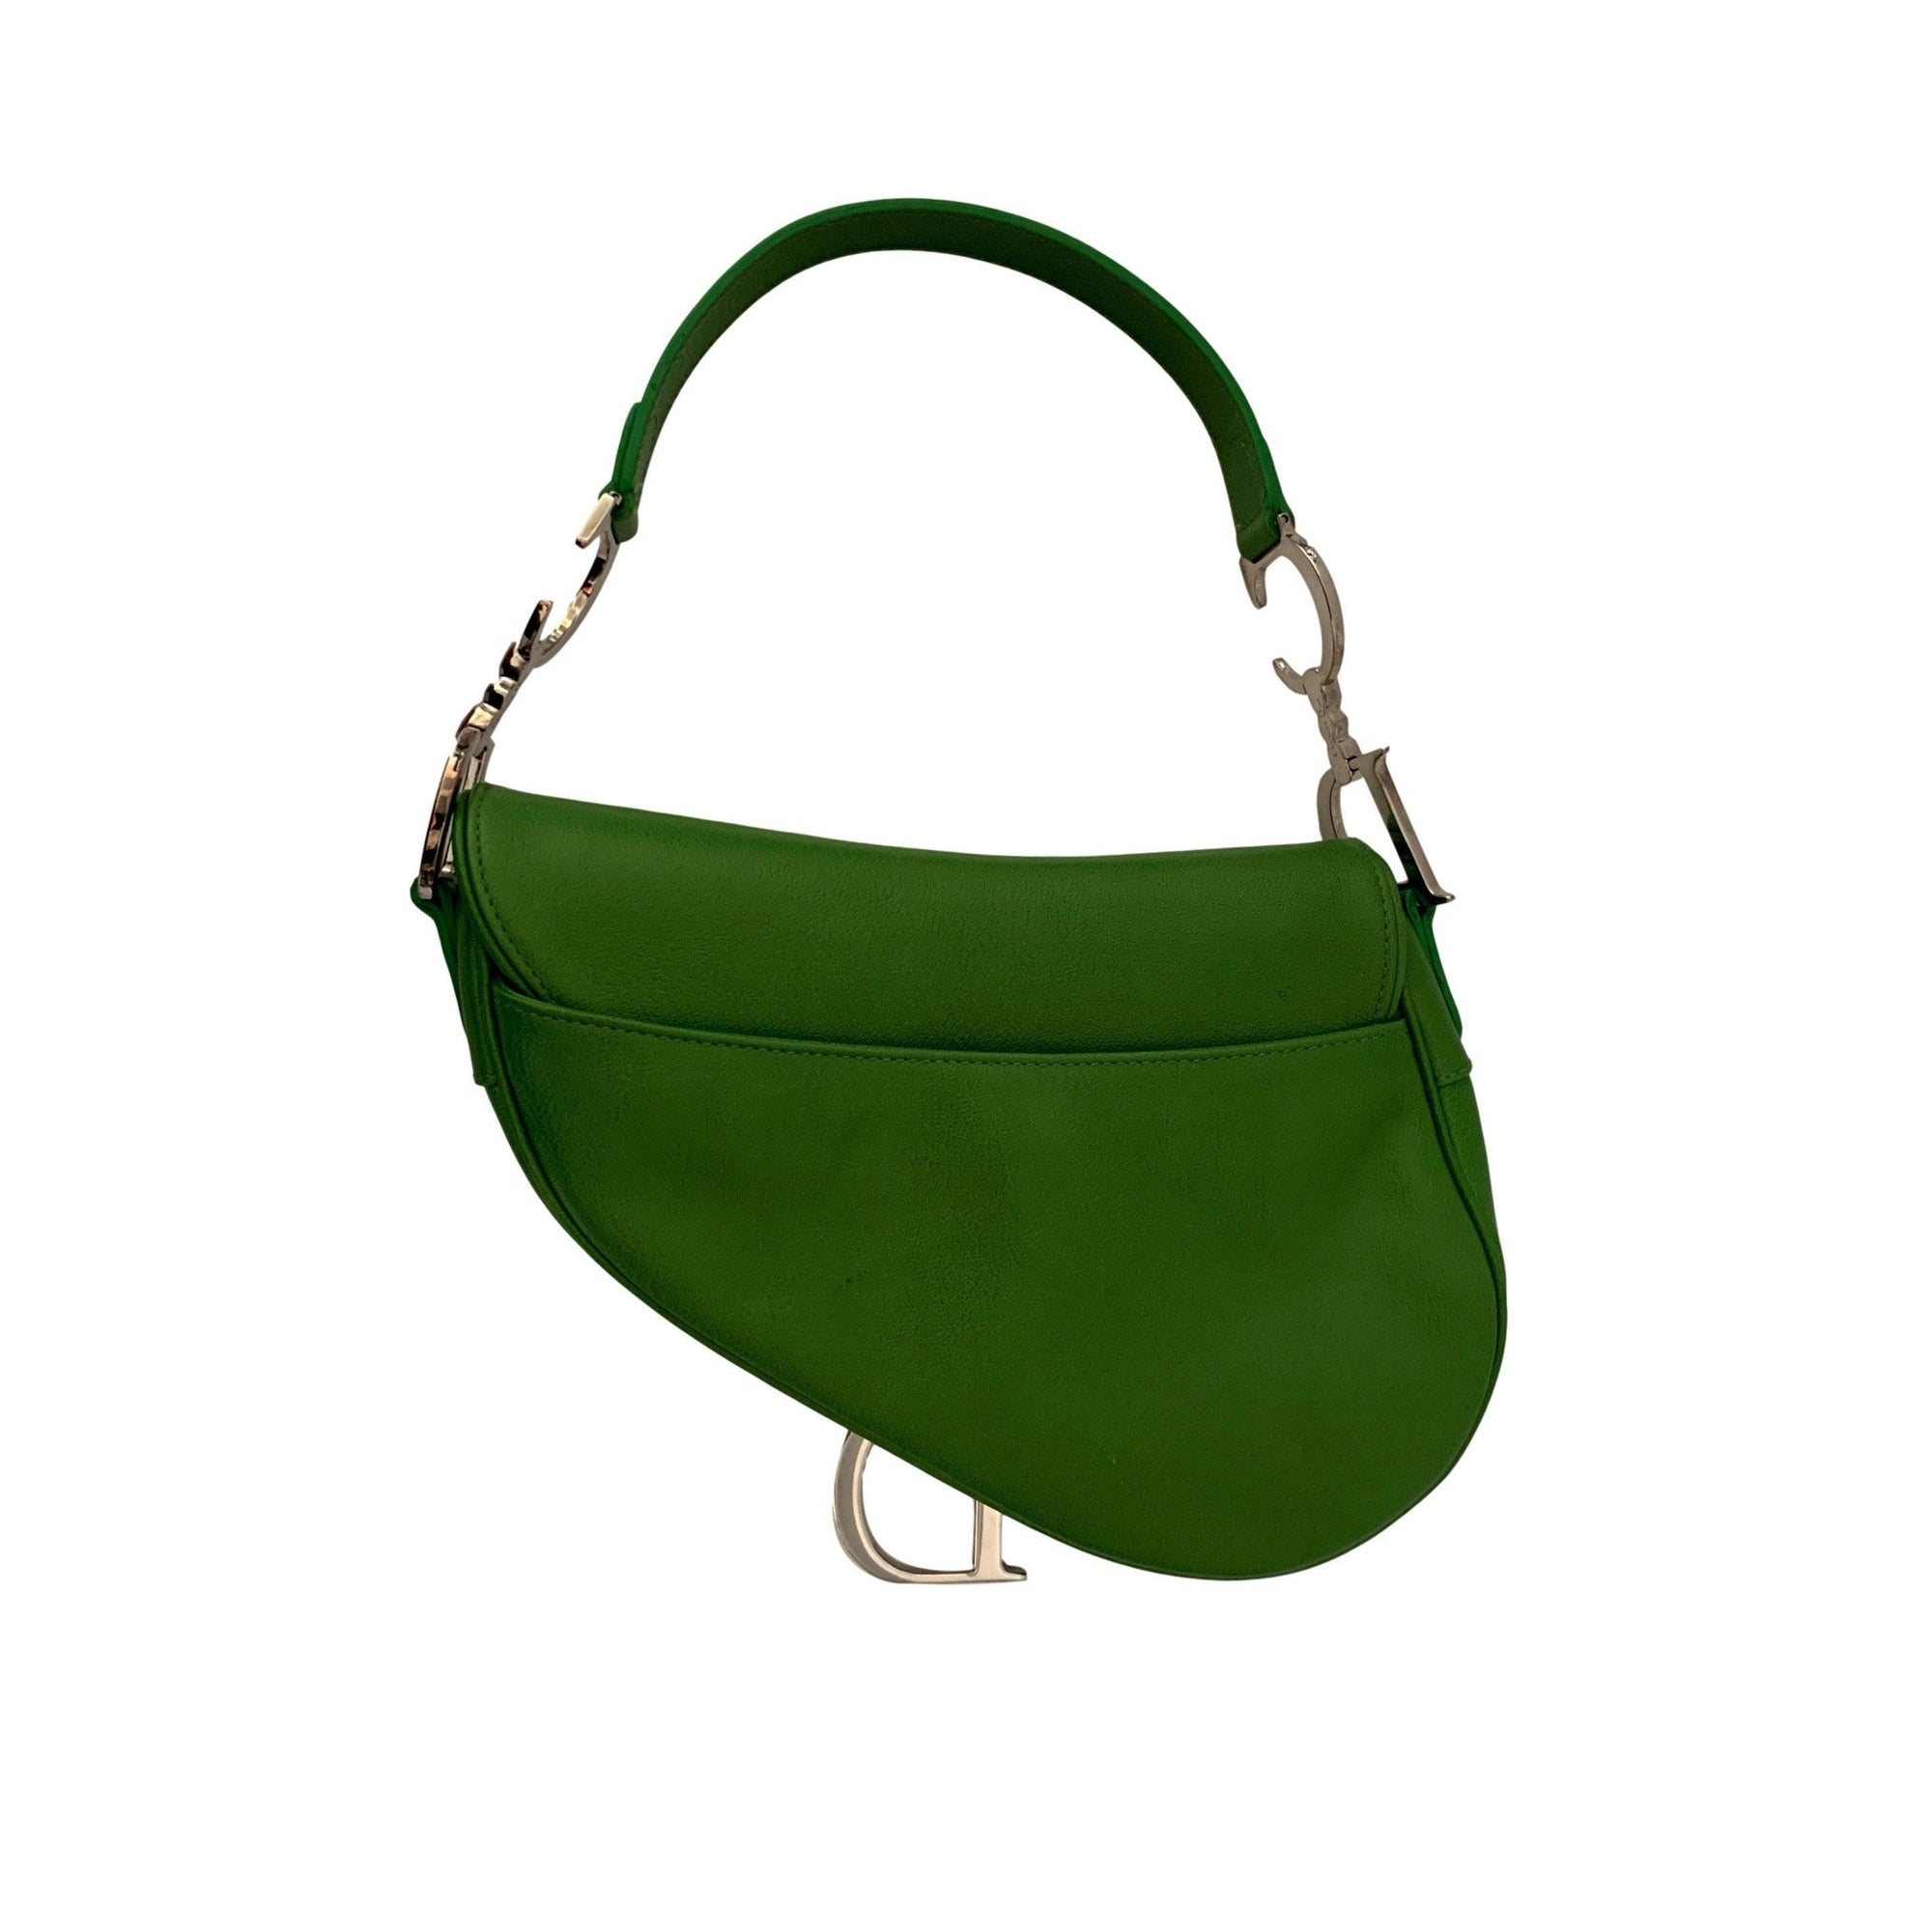 Dior Green Leather Saddle Bag - Handbags